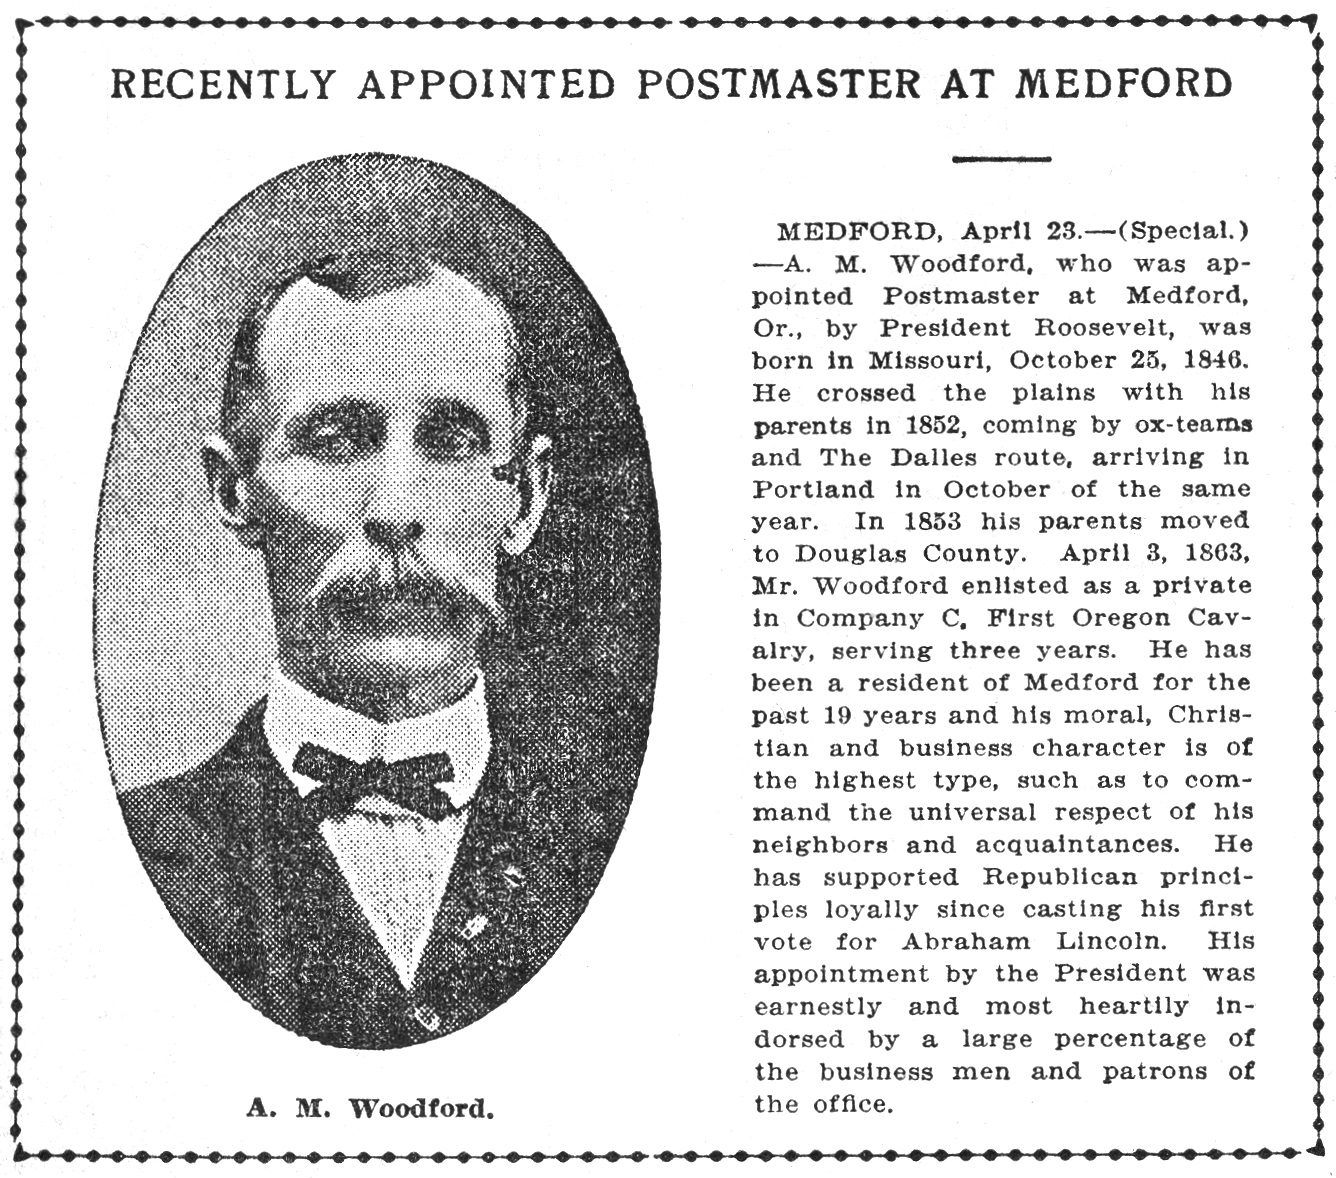 A. M. Woodford April 25, 1904 Oregonian